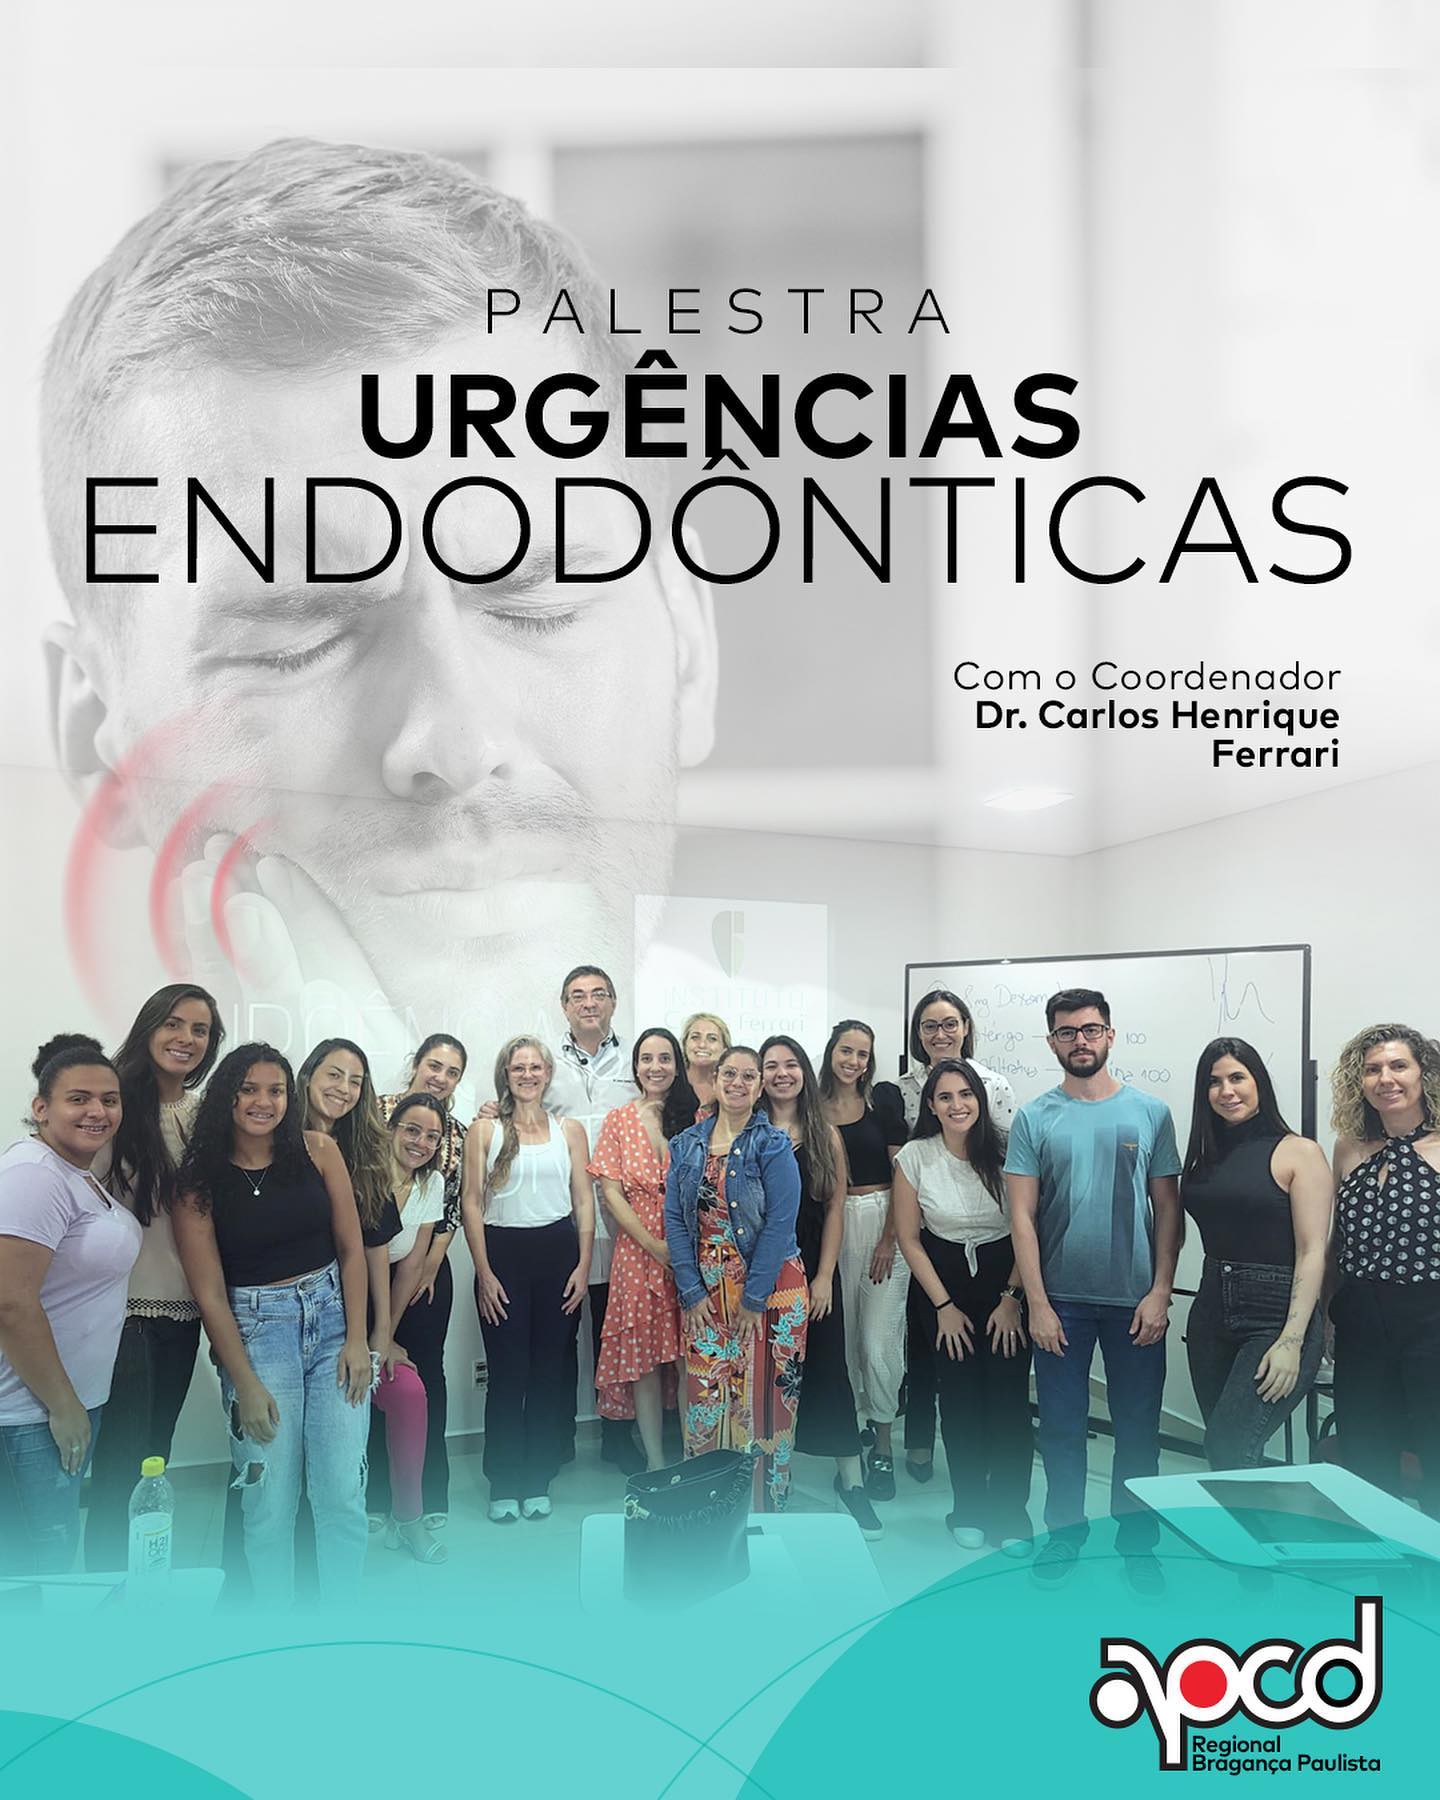 您目前正在观看牙髓病学的紧急情况。在APCD Bragança Pta的讲座。